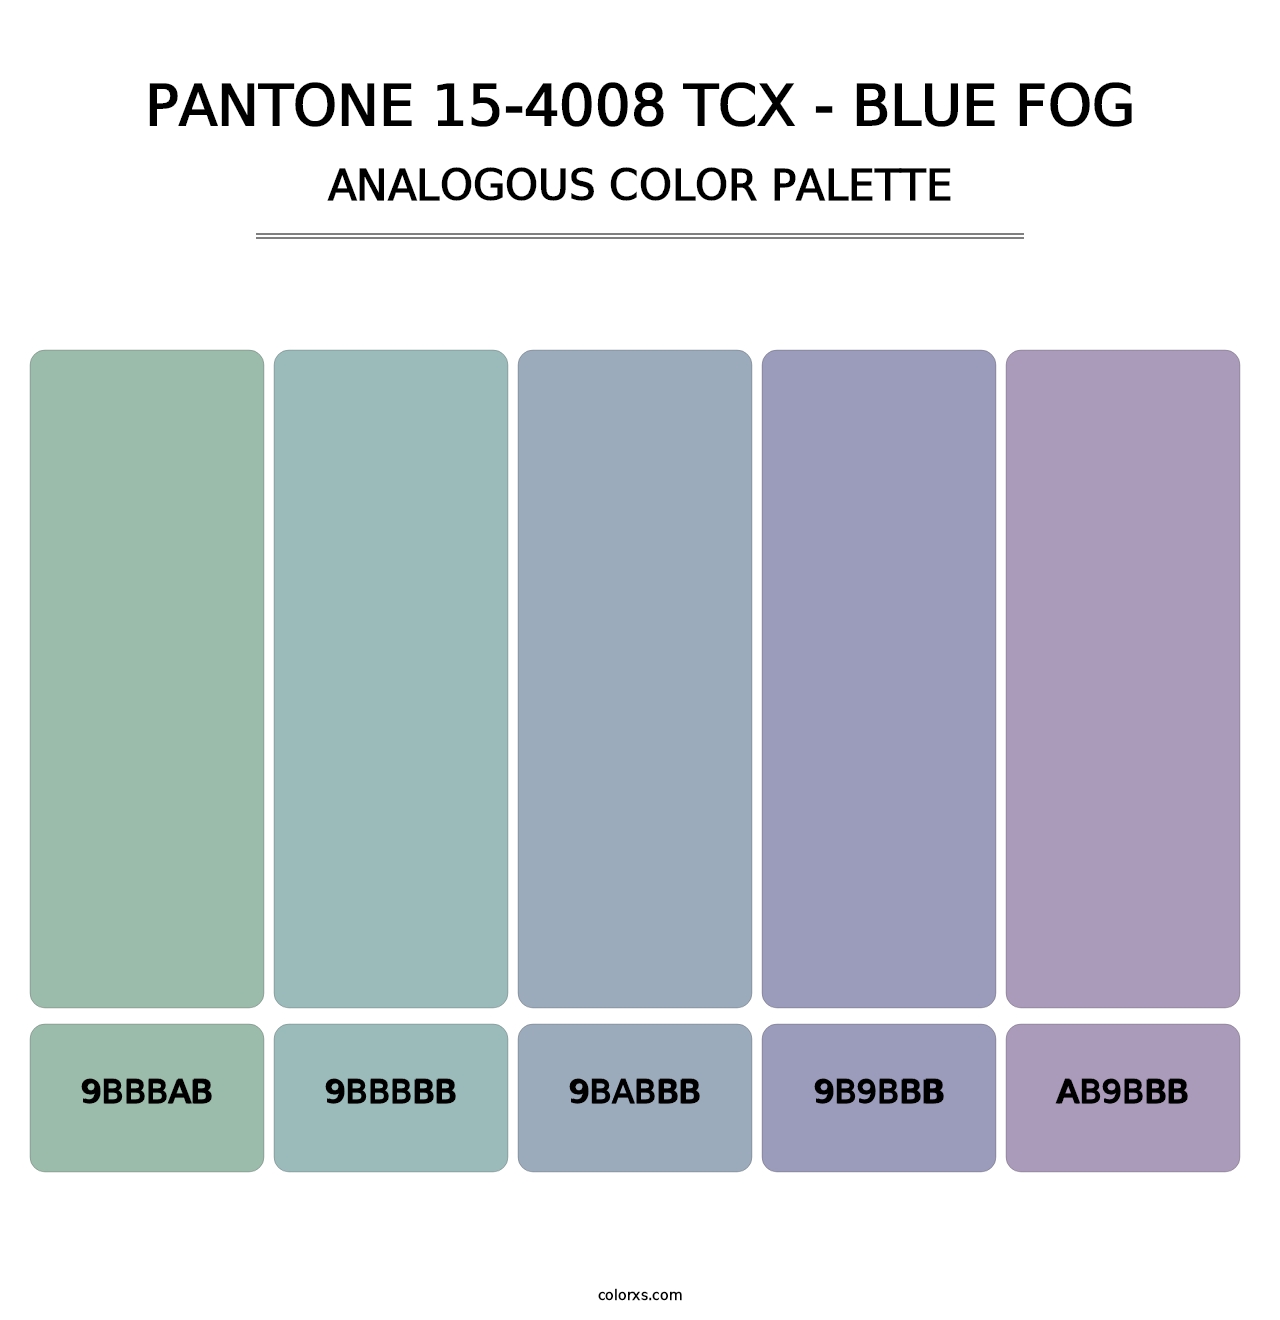 PANTONE 15-4008 TCX - Blue Fog - Analogous Color Palette